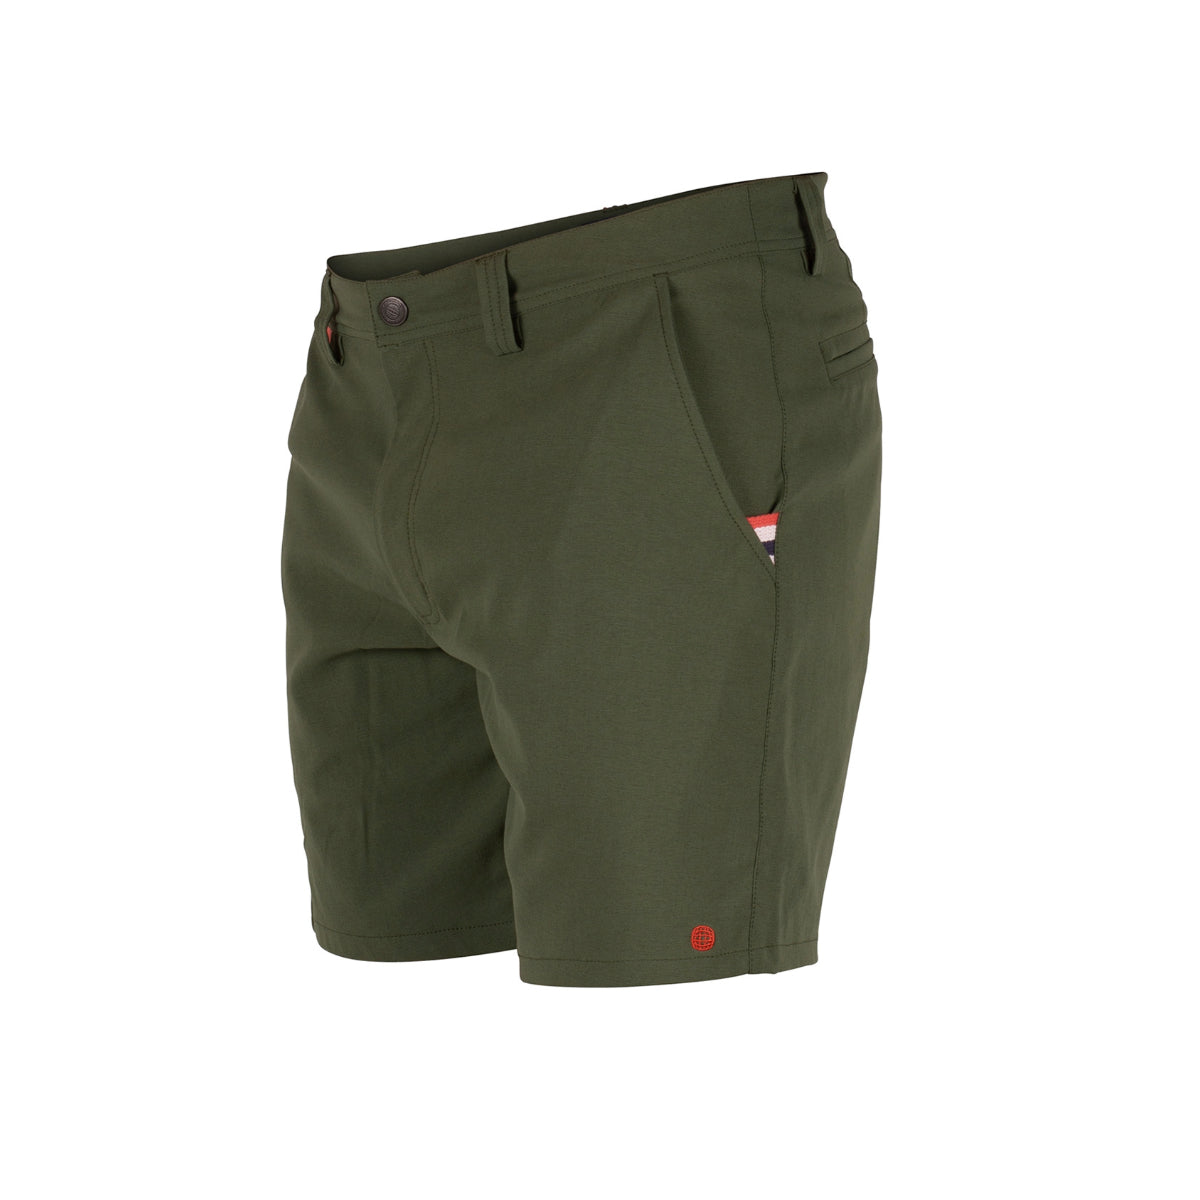 Amundsen Sports - Men's 8 Incher Deck Shorts - Spruce Green